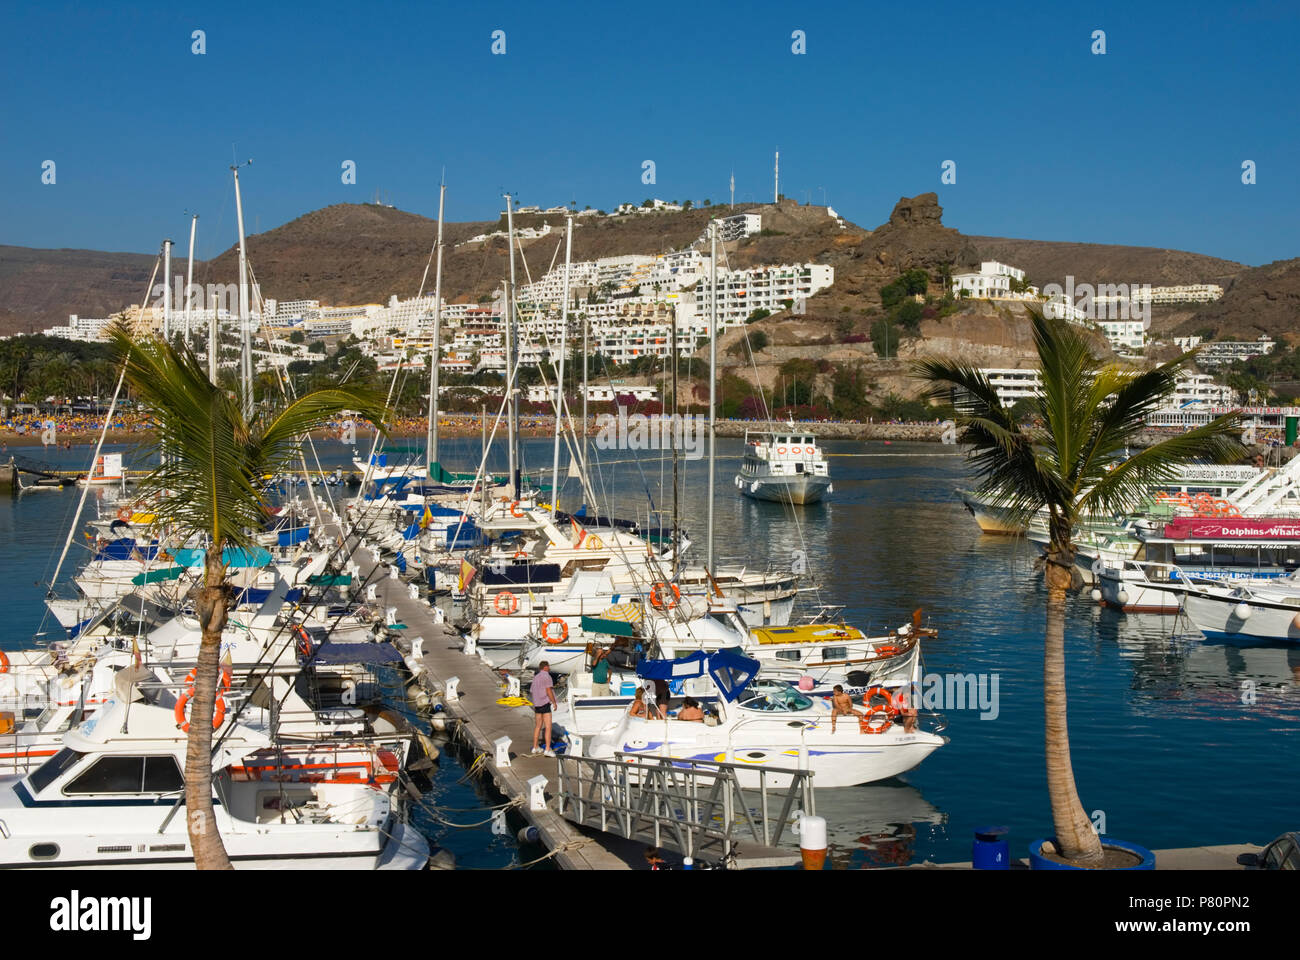 Spain - Canary Islands - Gran Canaria -  Puerto Rico - View of Marina Stock Photo